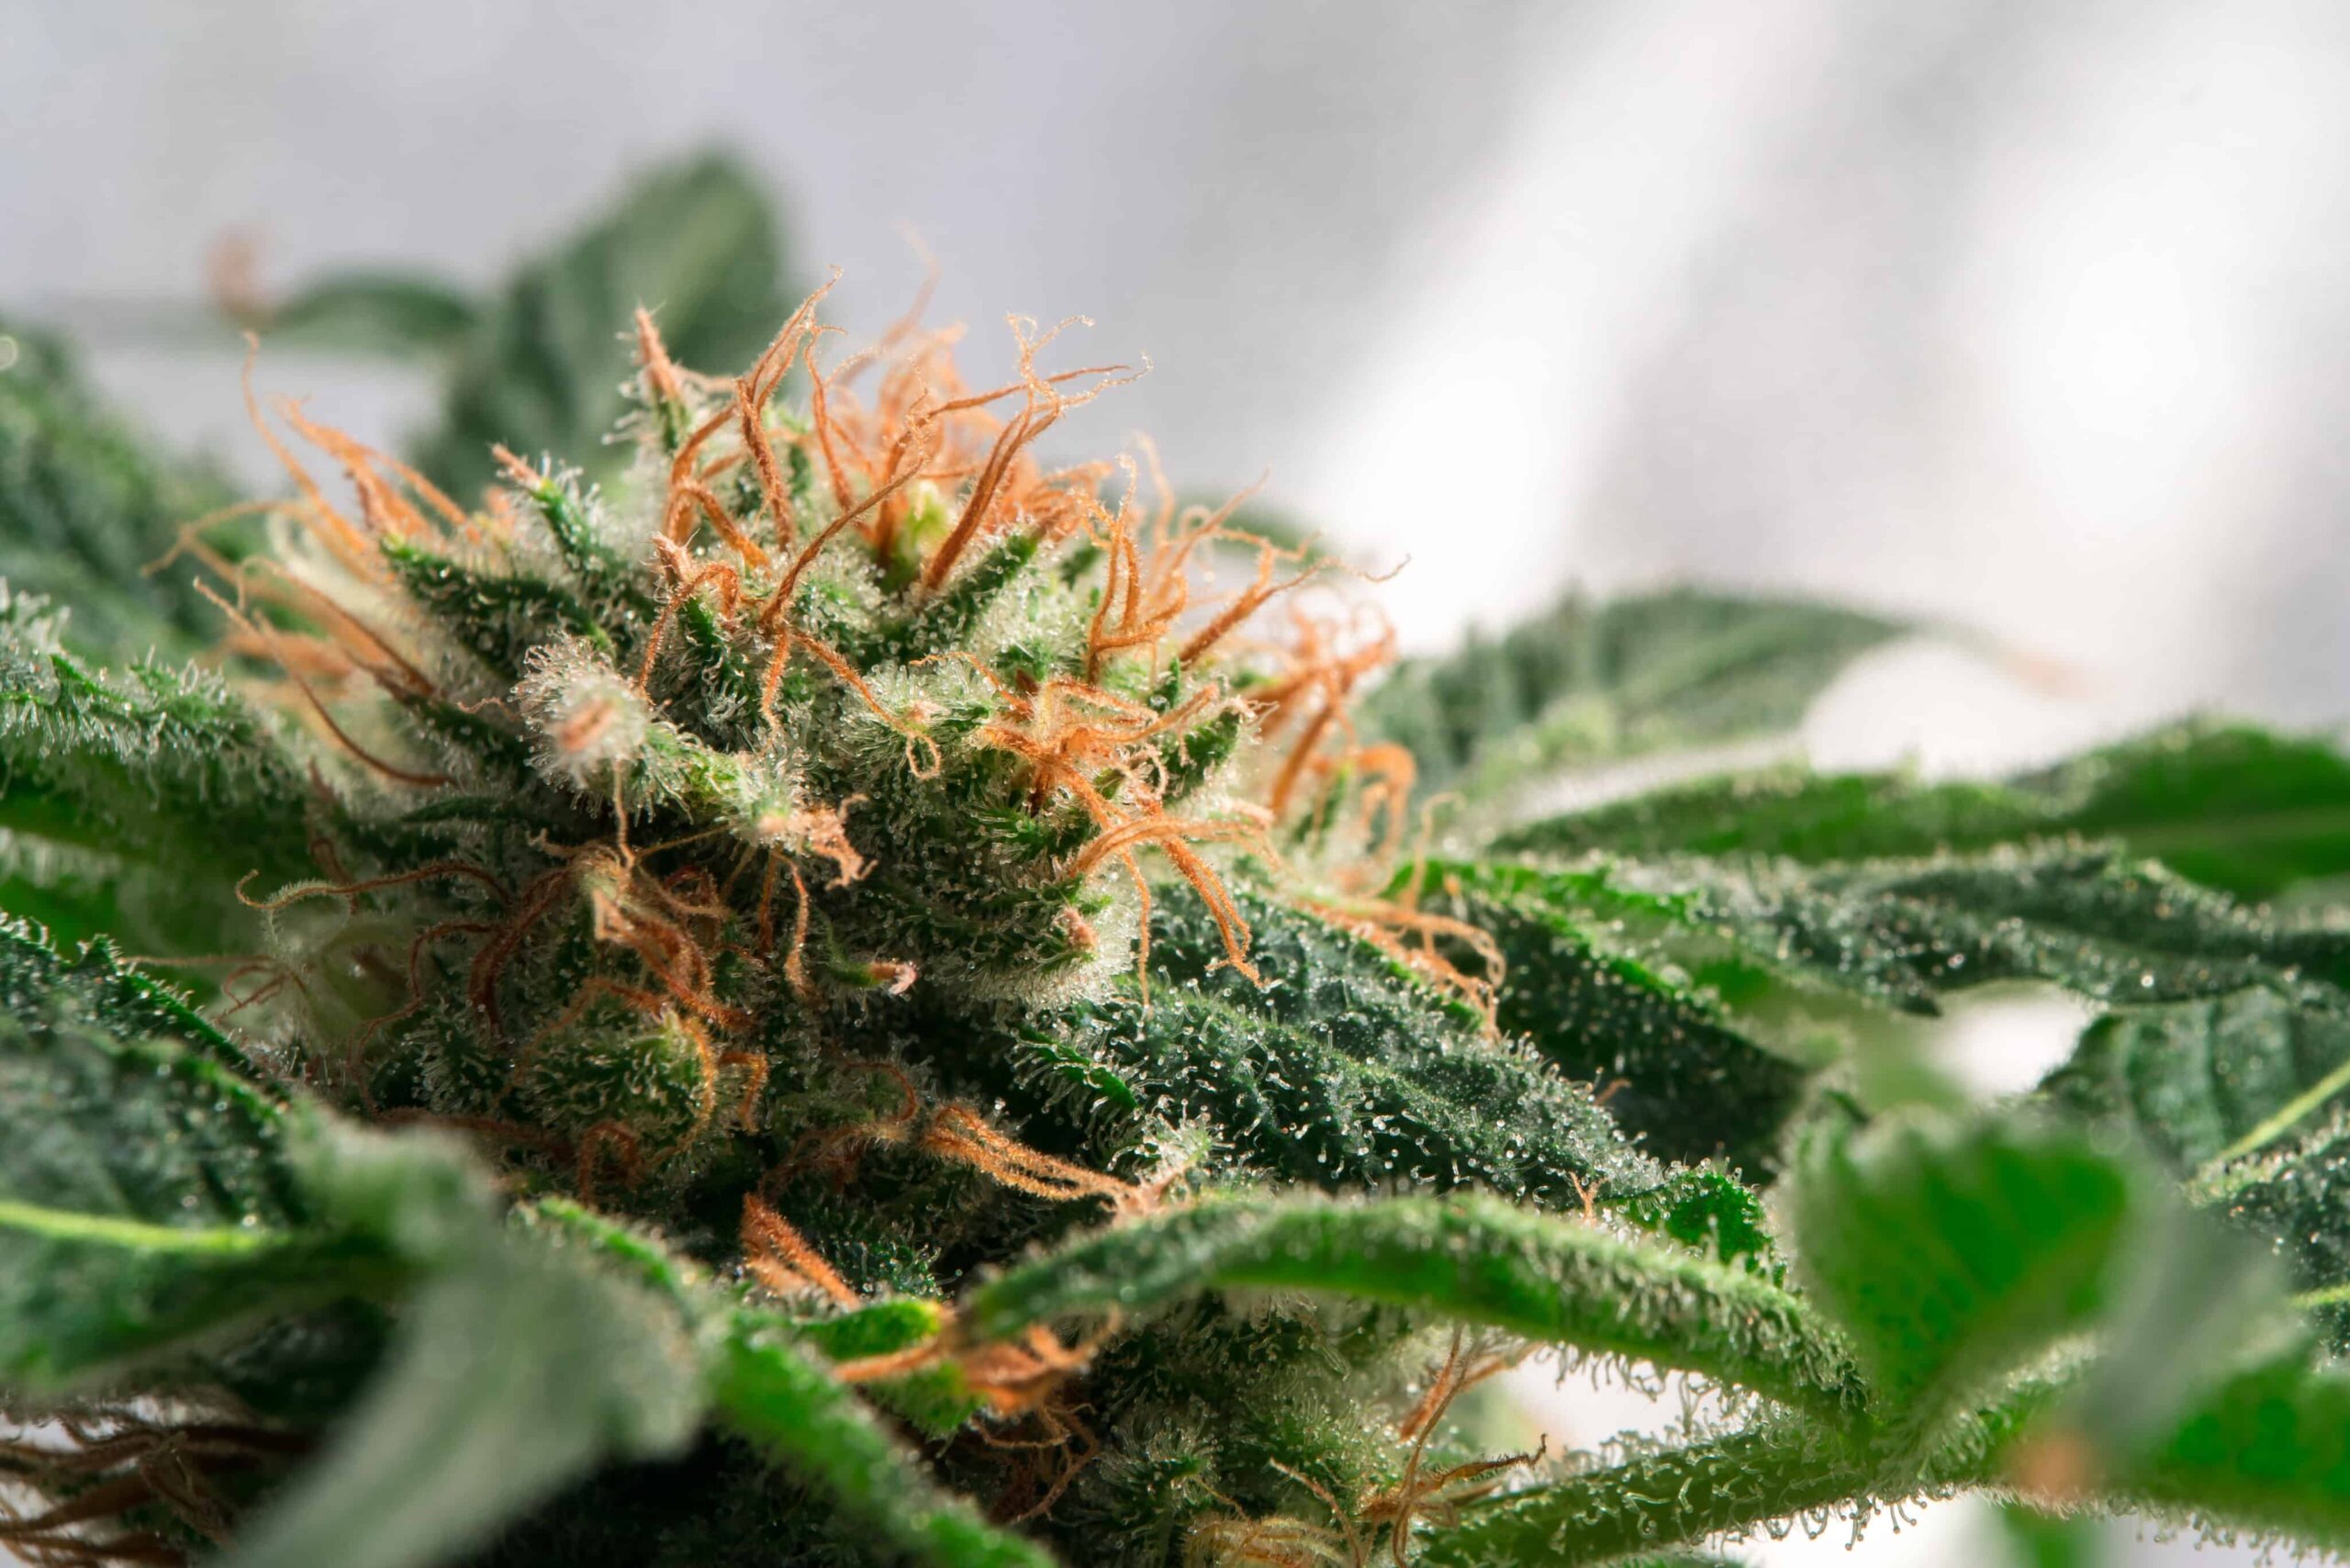 Законодатели Южной Дакоты отменили законопроект, ограничивающий доступ пациентов к марихуане в медицинских целях